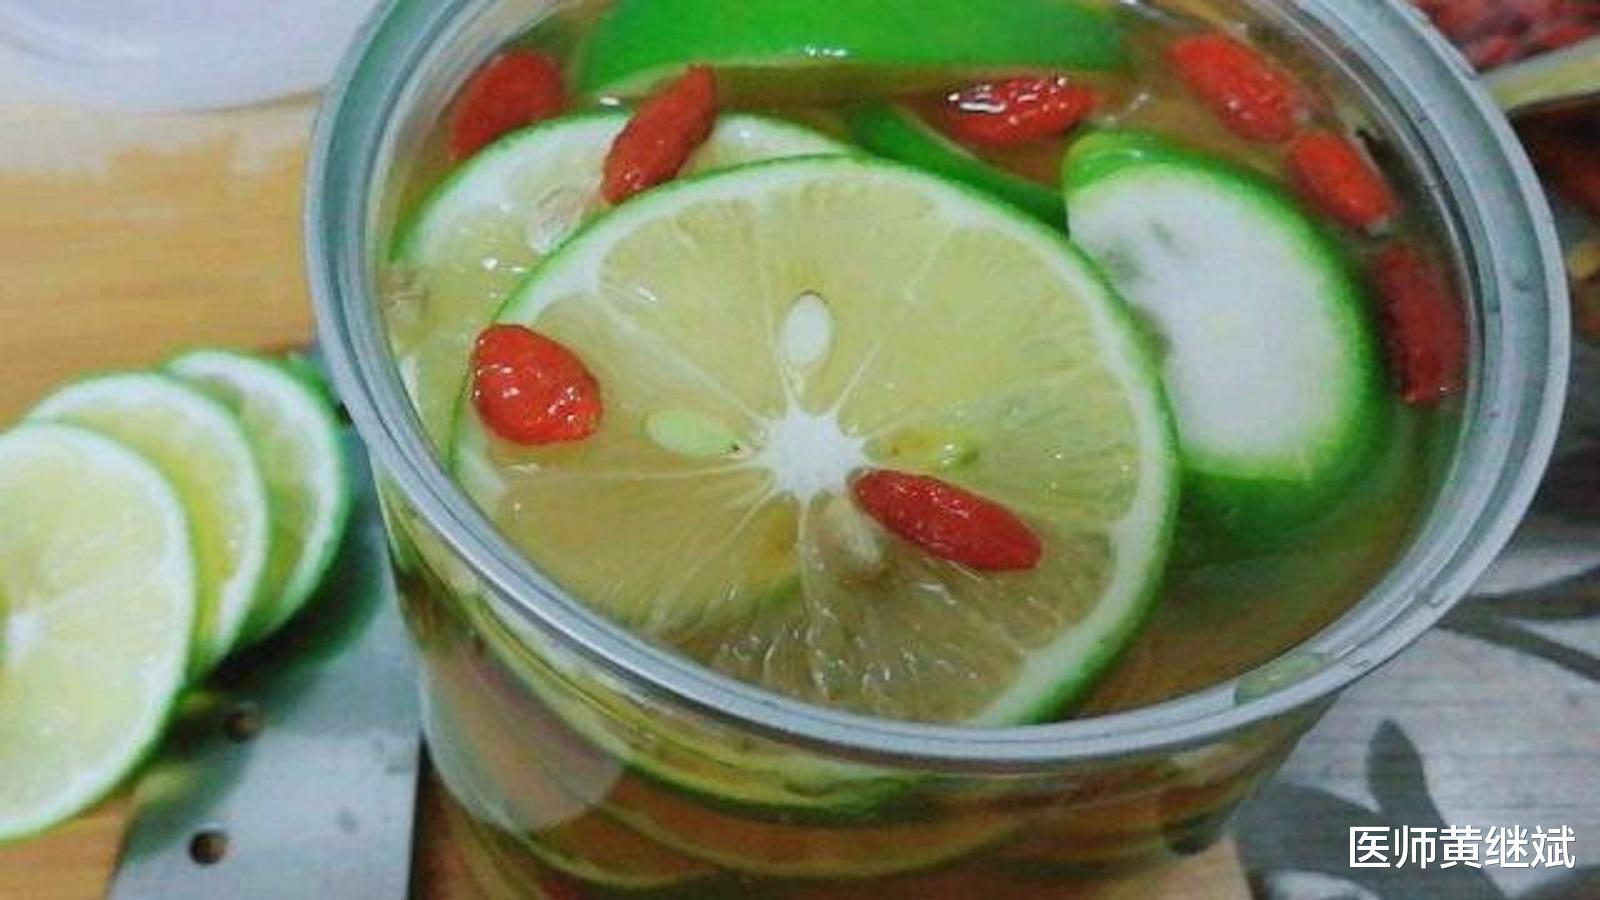 原创掌握柠檬水的四种喝法,长期饮用不仅止咳化痰,还能促进消化